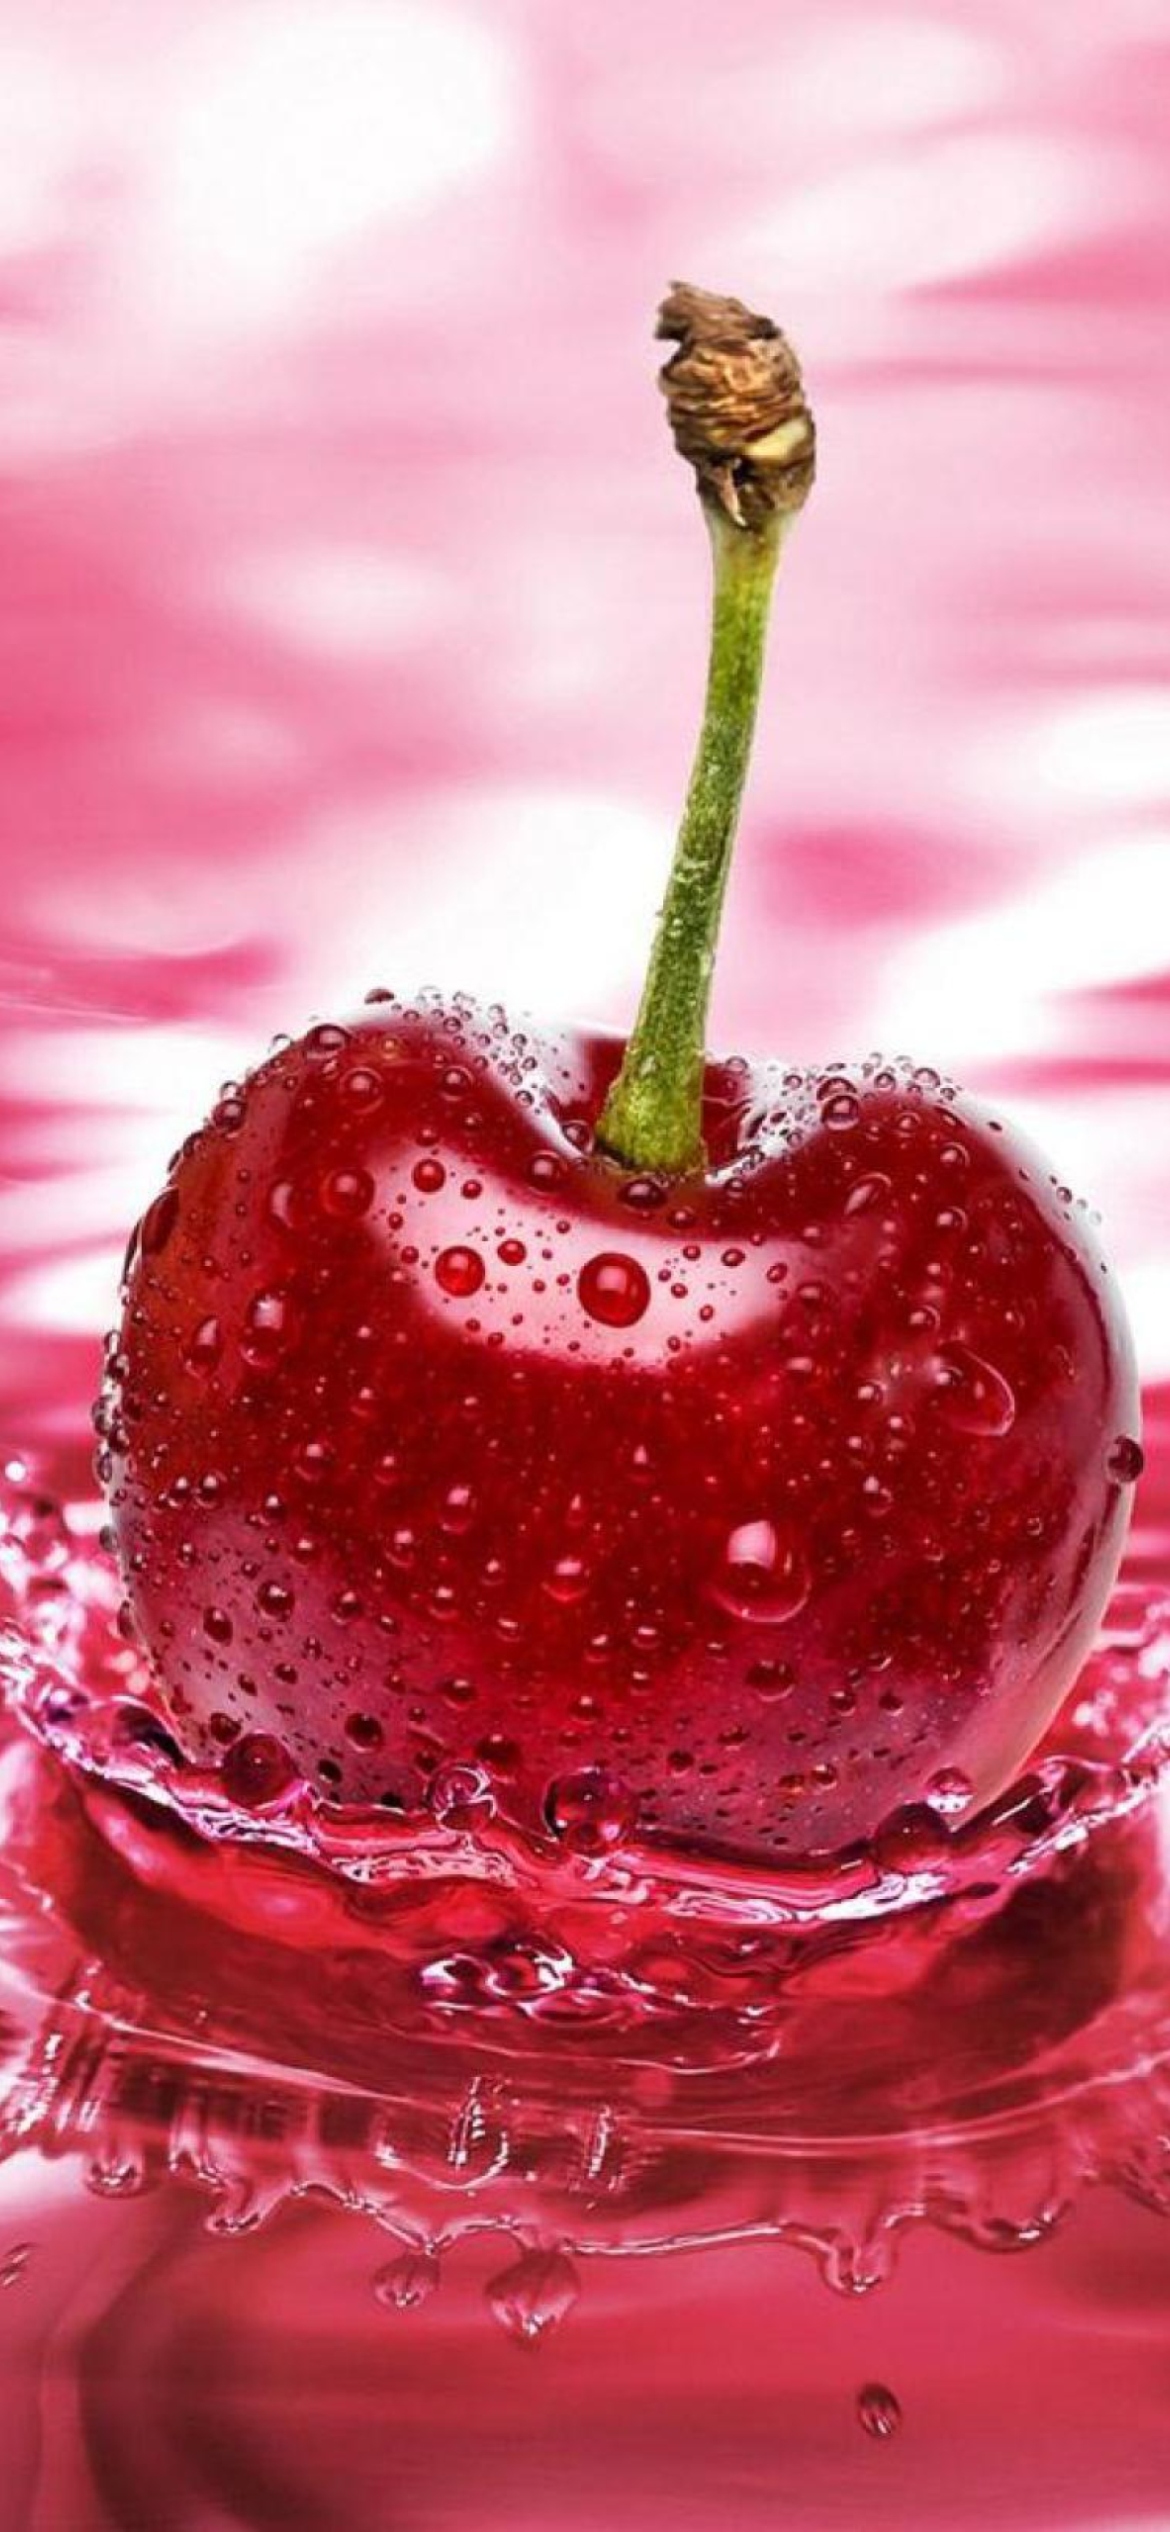 Das Red Cherry Splash Wallpaper 1170x2532